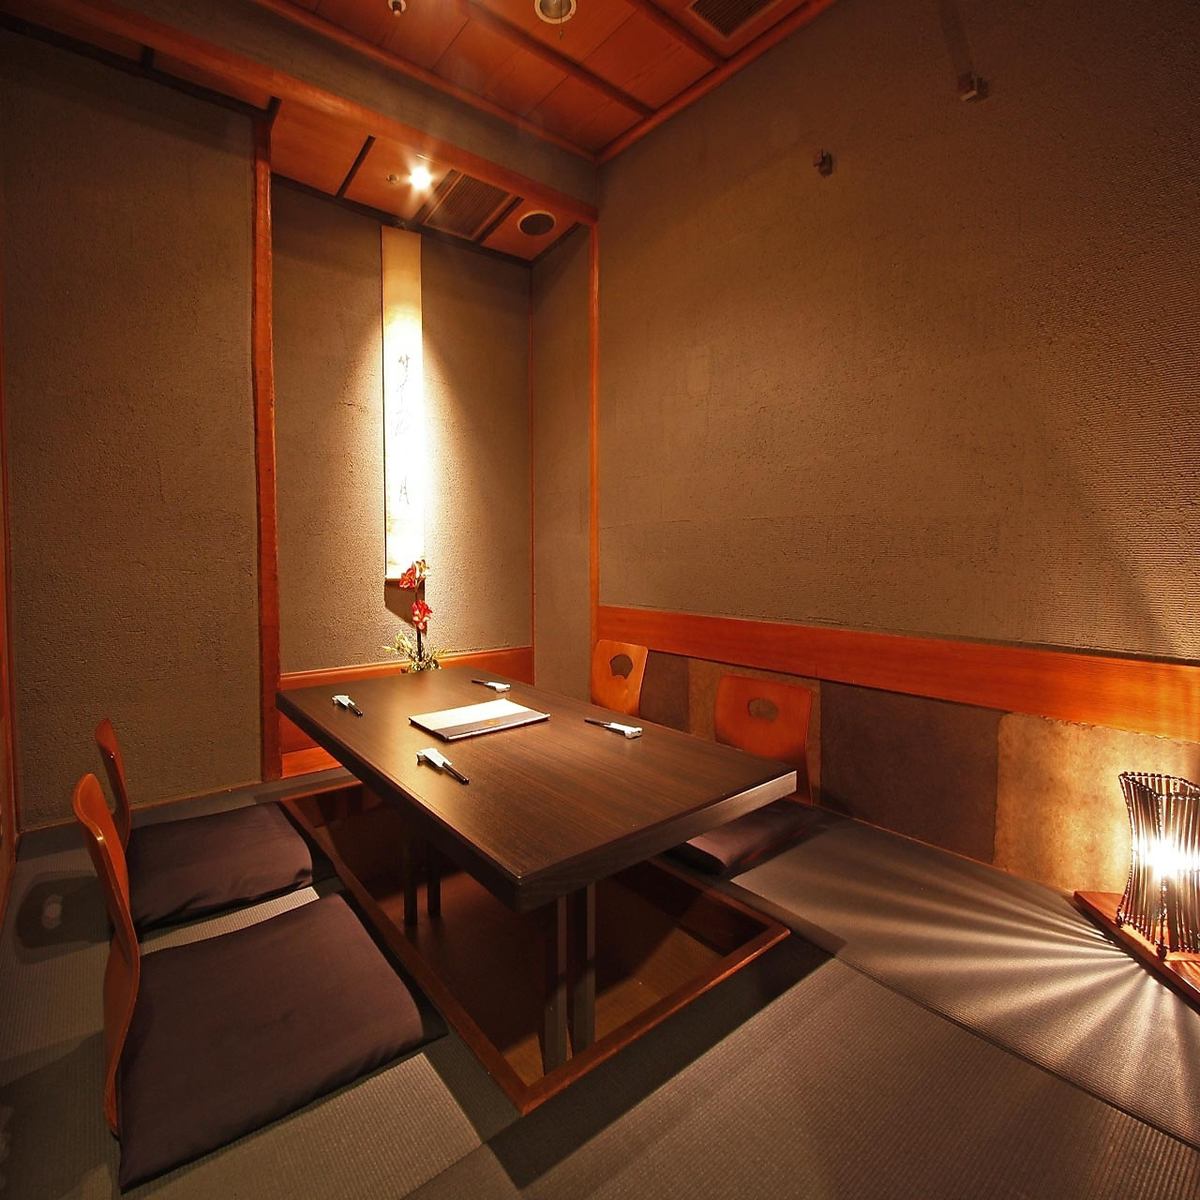 一個重要的用餐聚會是“成人輕鬆的日式房間”和“特色菜”